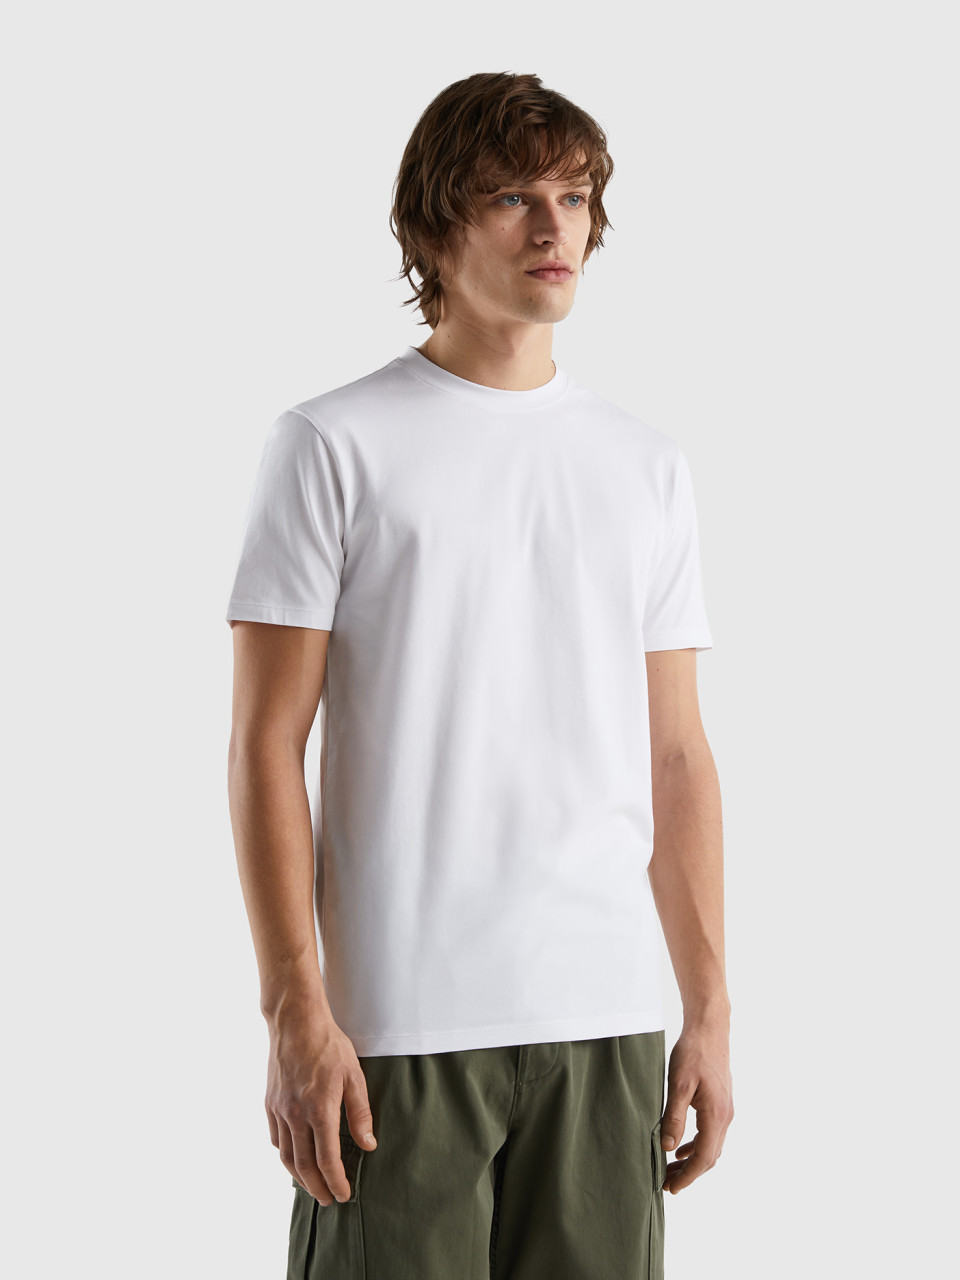 Benetton, Camiseta Slim Fit De Algodón Elástico, Blanco, Hombre